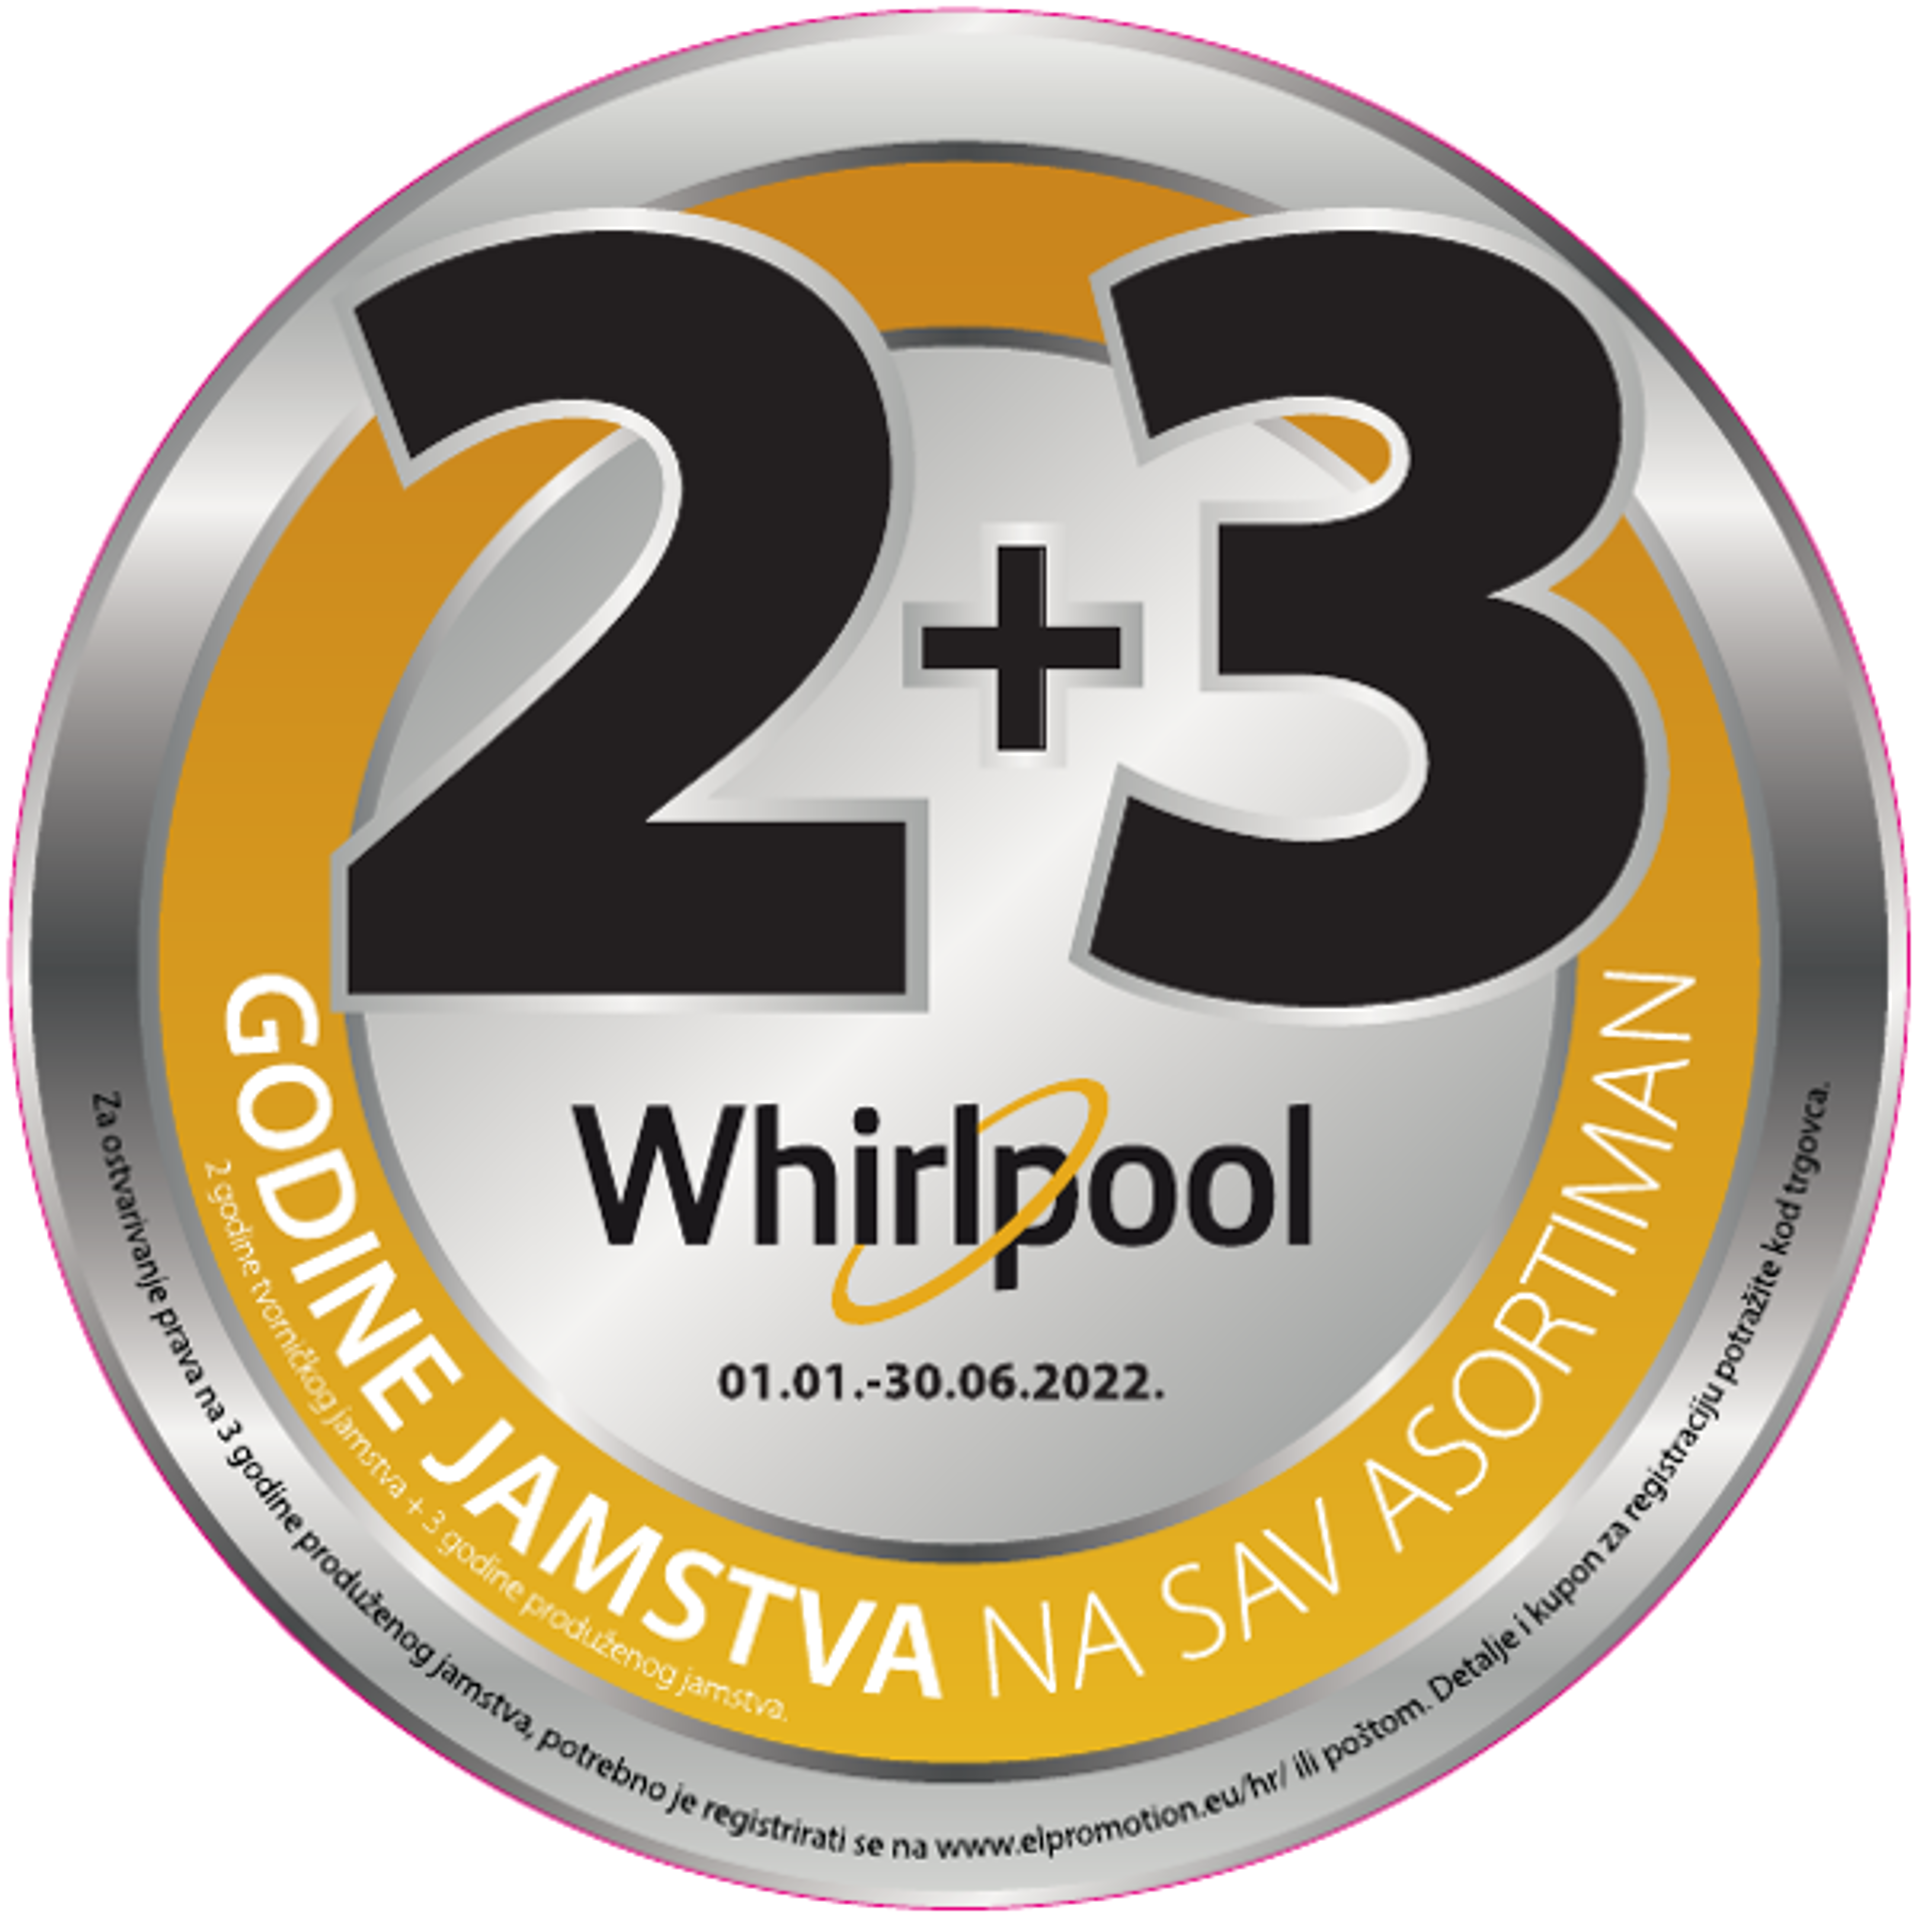 Whirlpool i Indesit 2+3 godine produženog jamstva